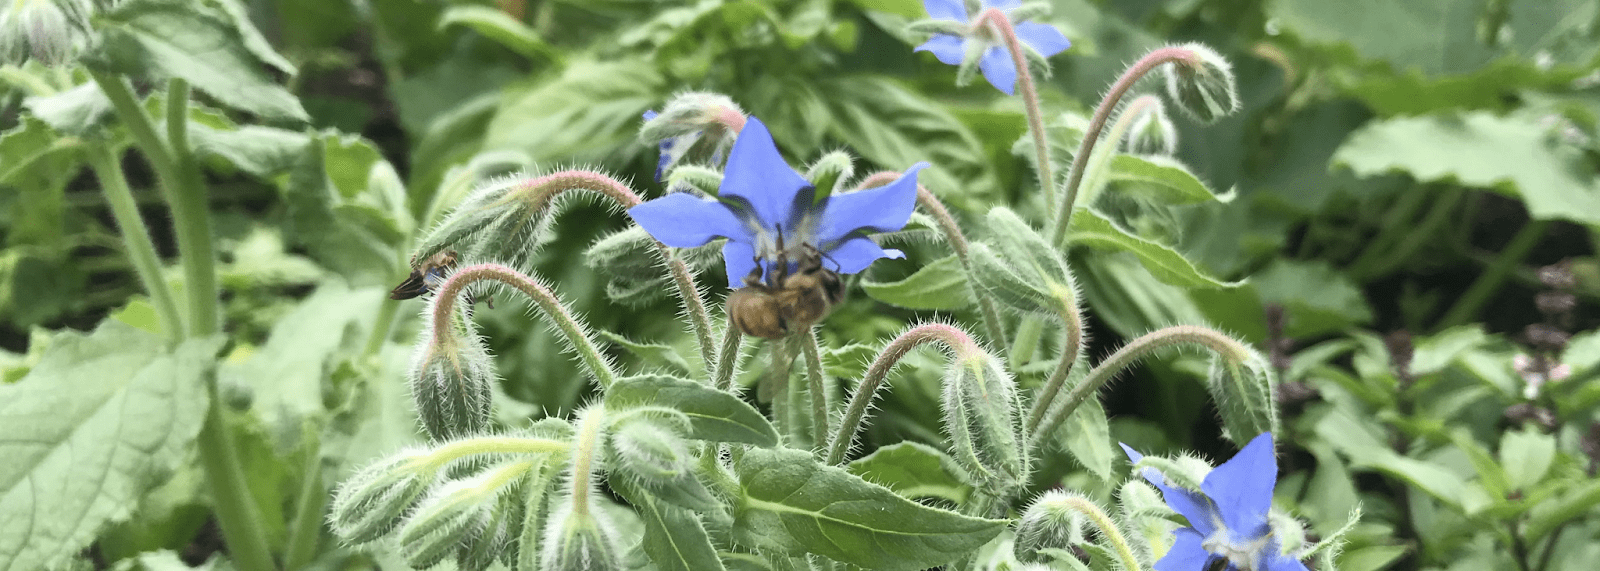 Hình ảnh có chiều rộng tiêu đề là một bông hoa dừa cạn nằm giữa thân và lá đang được một chú ong mật ghé thăm.